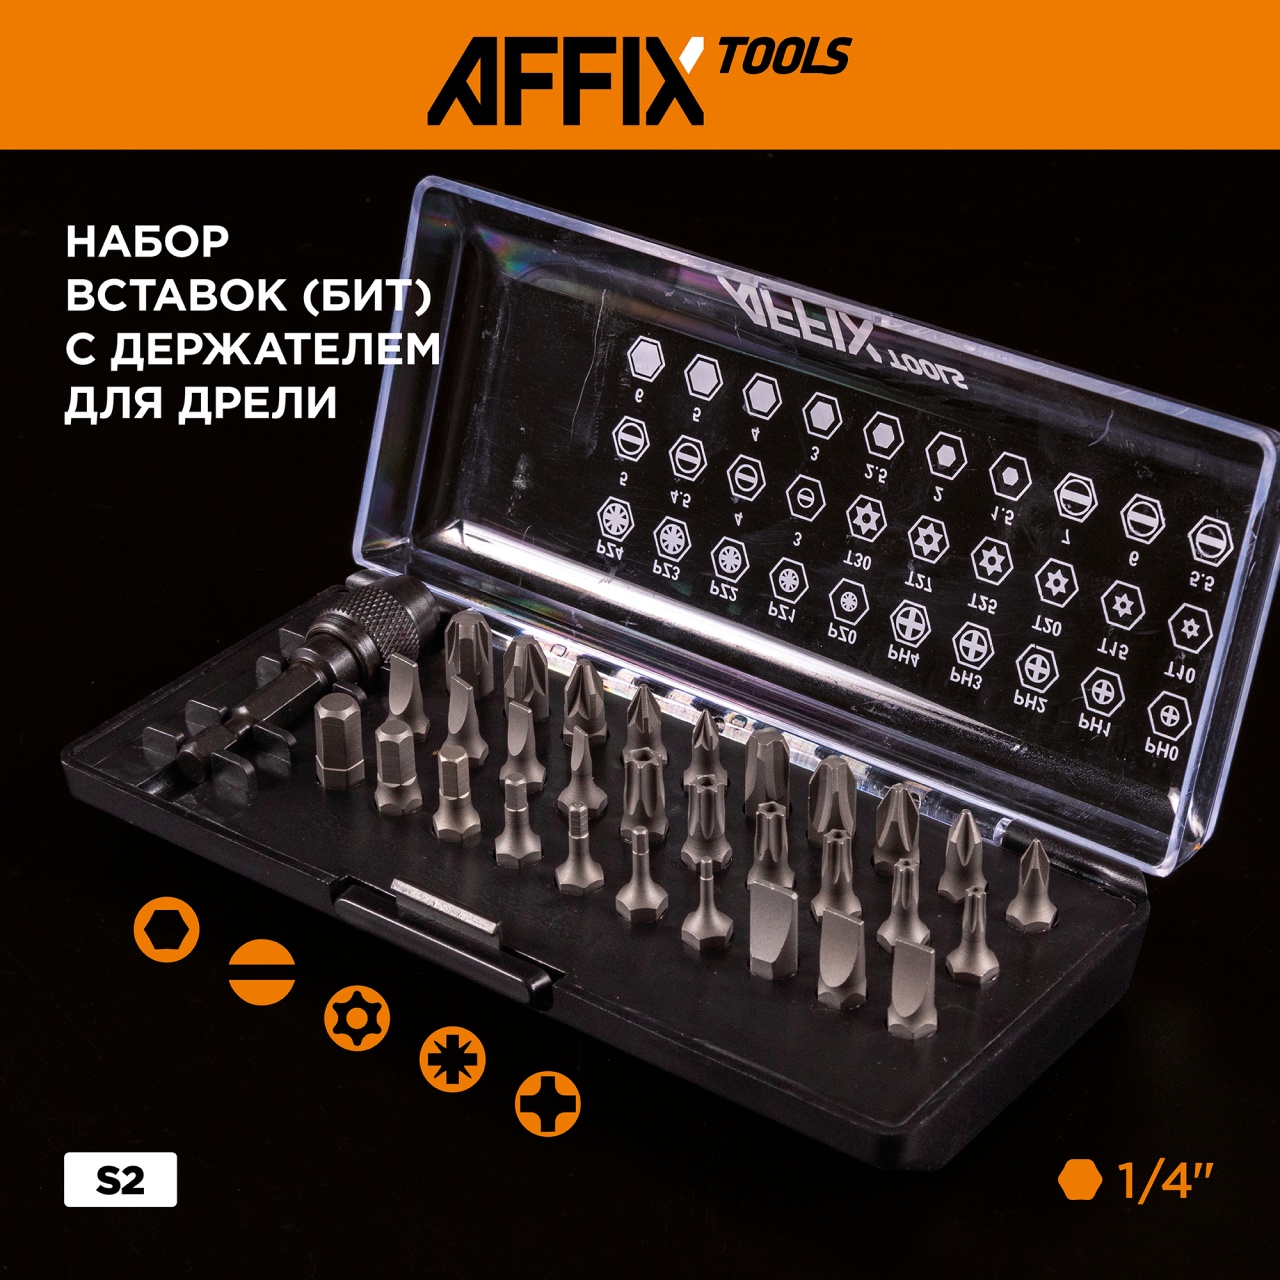 Набор инструментов универсальный, 88 предметов AFFIX AF01088C